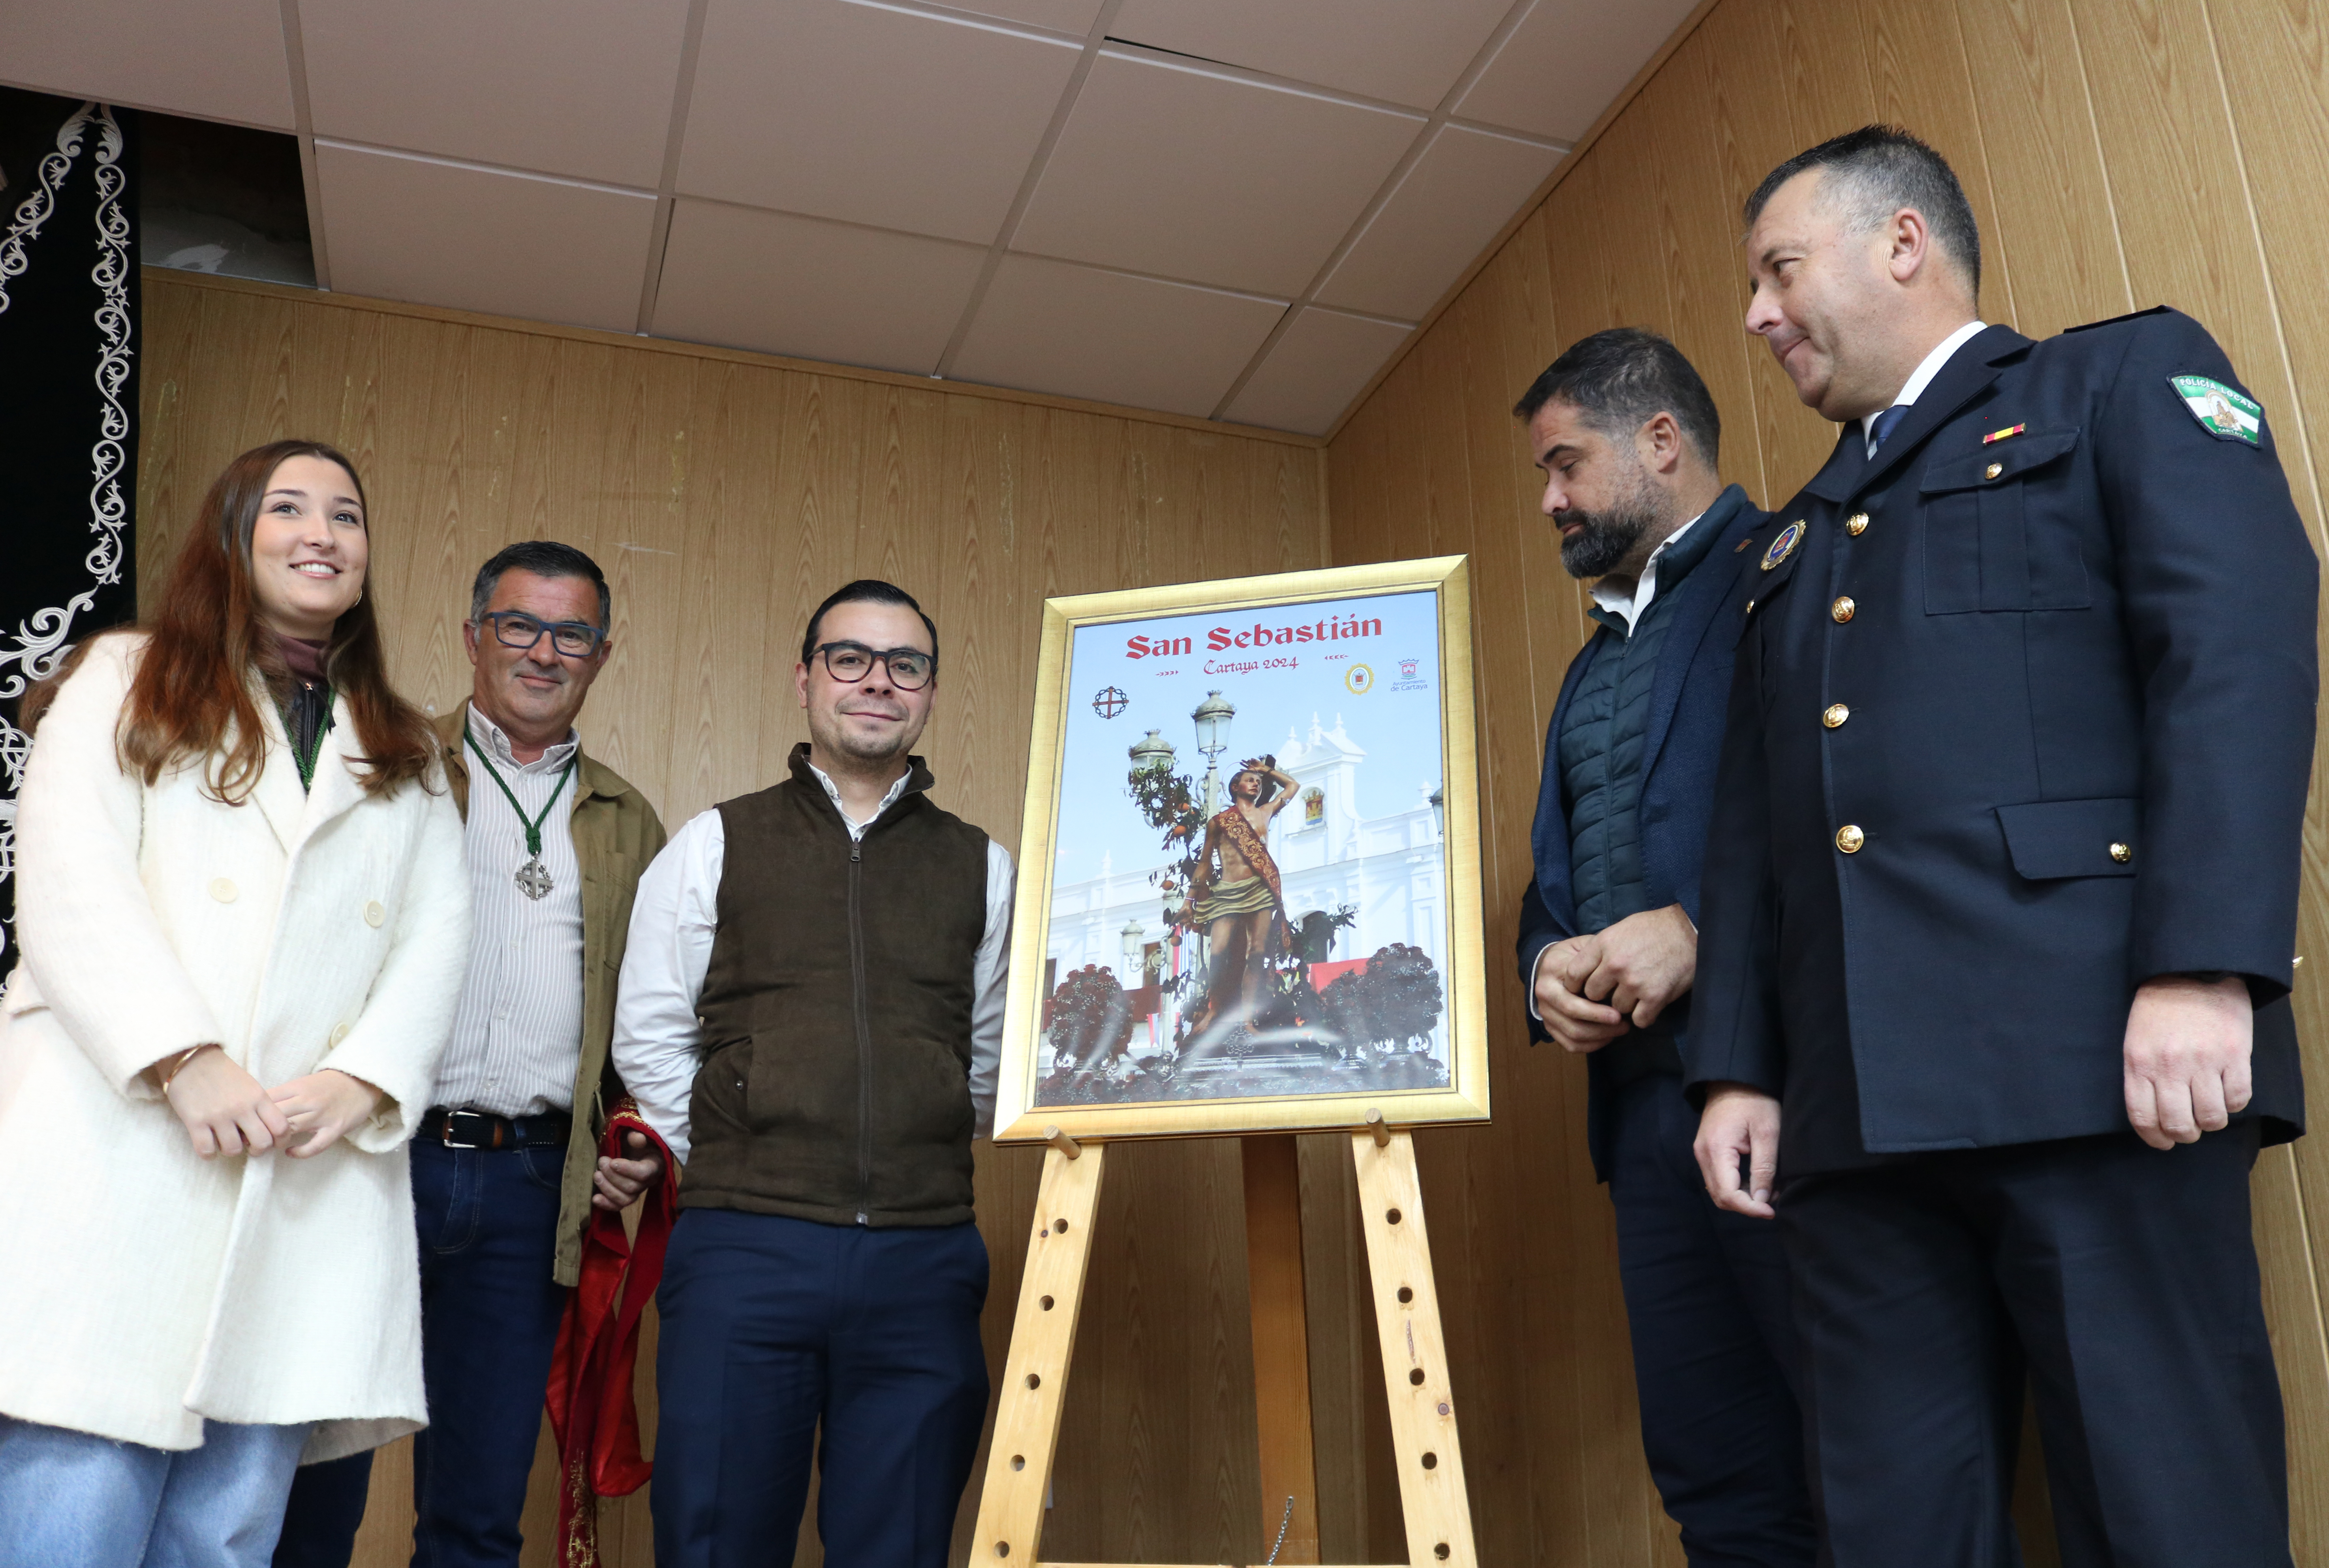 Una fotografía de Manuel Rodríguez Toronjo anuncia los actos en honor a San Sebastián 